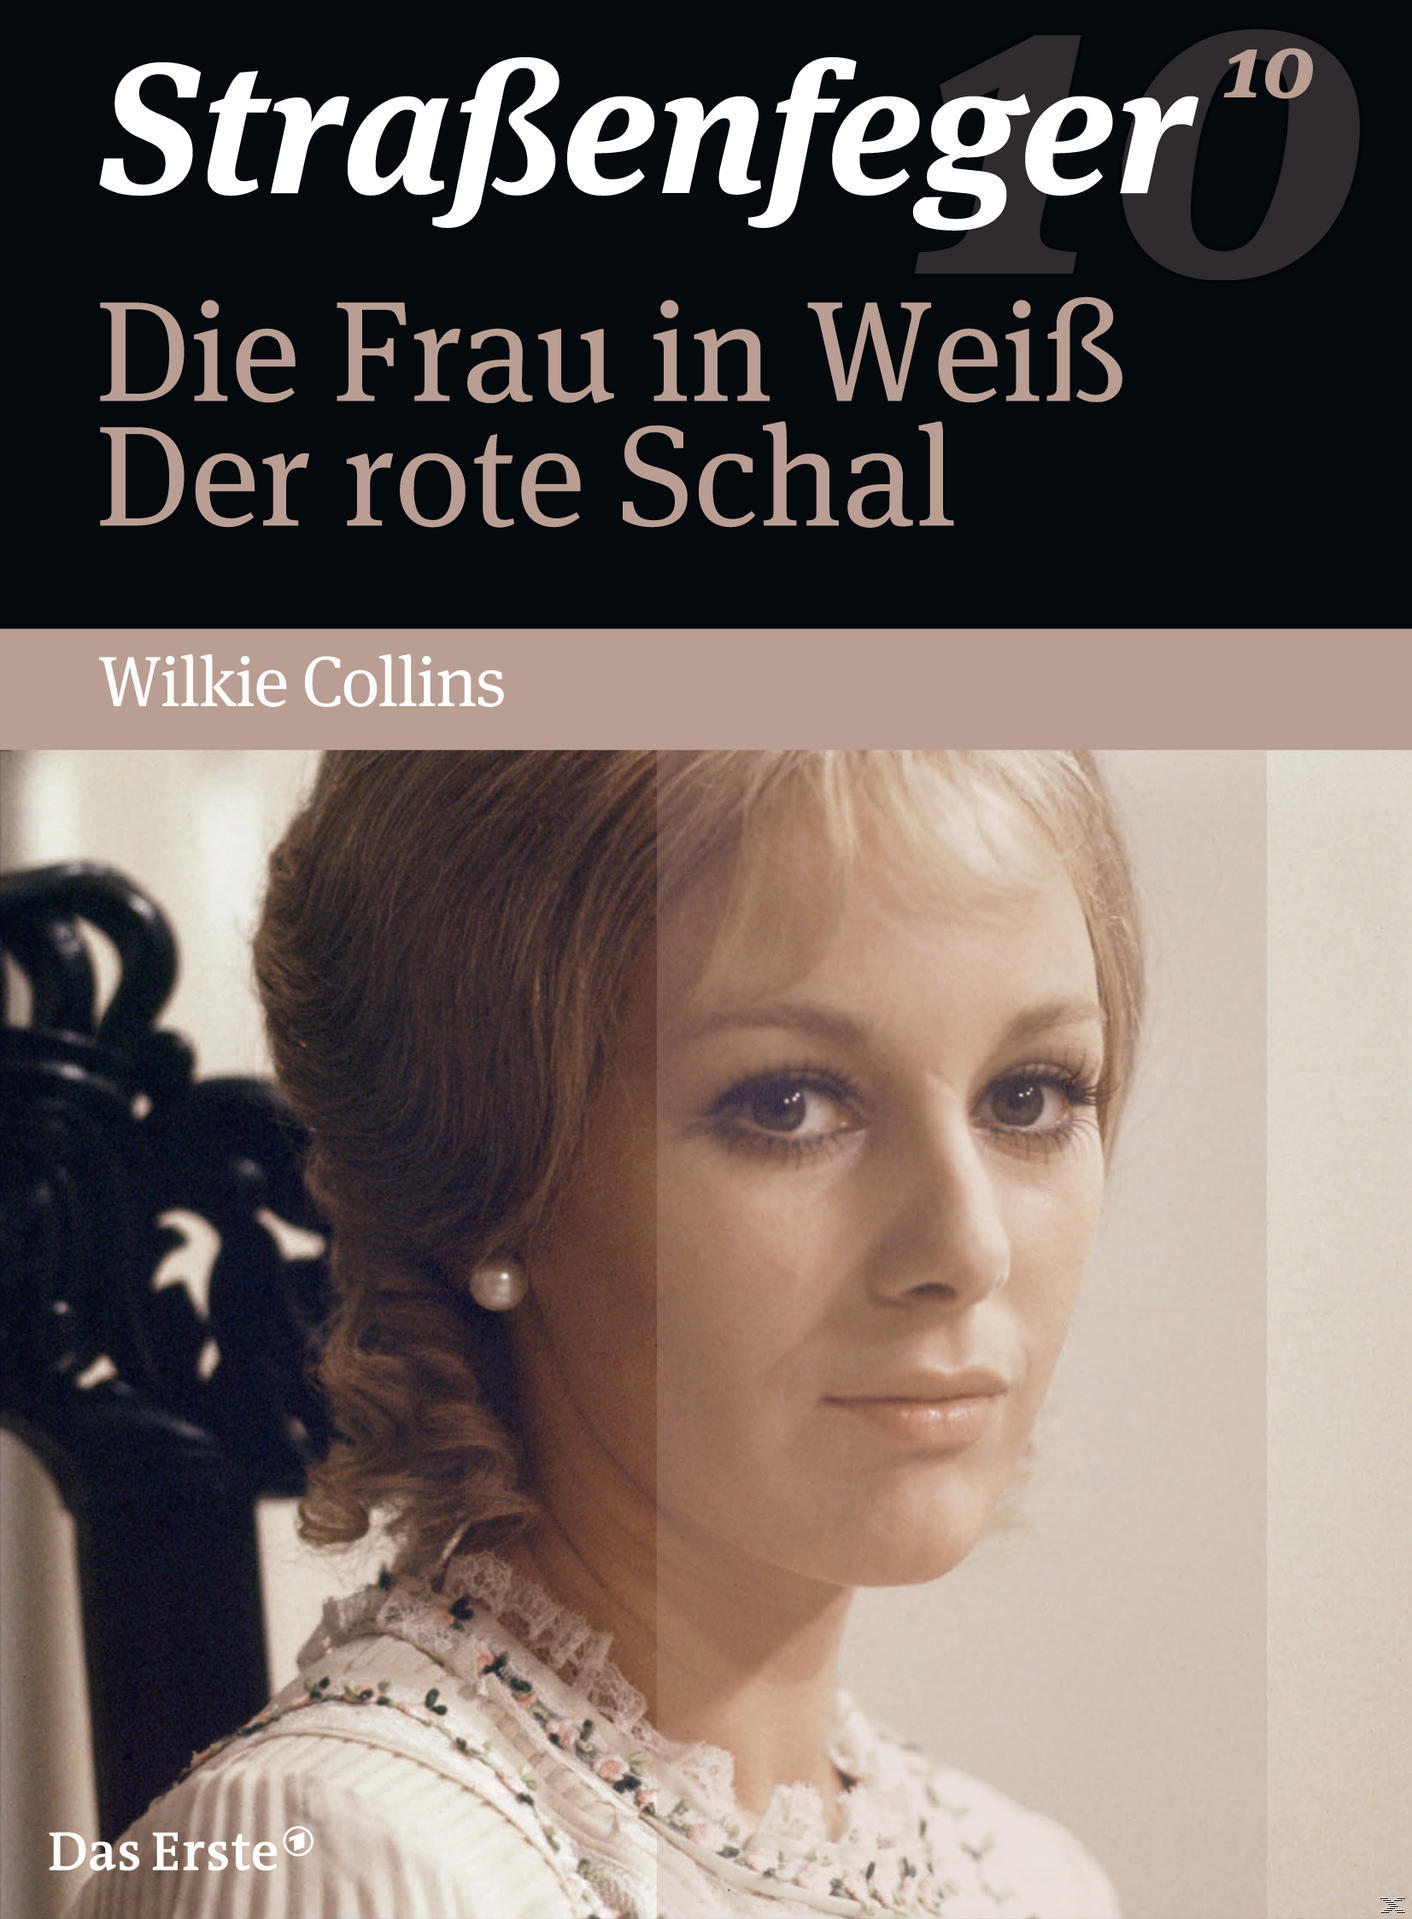 Frau Die DVD rote Straßenfeger in Der Schal Weiss, 10 -